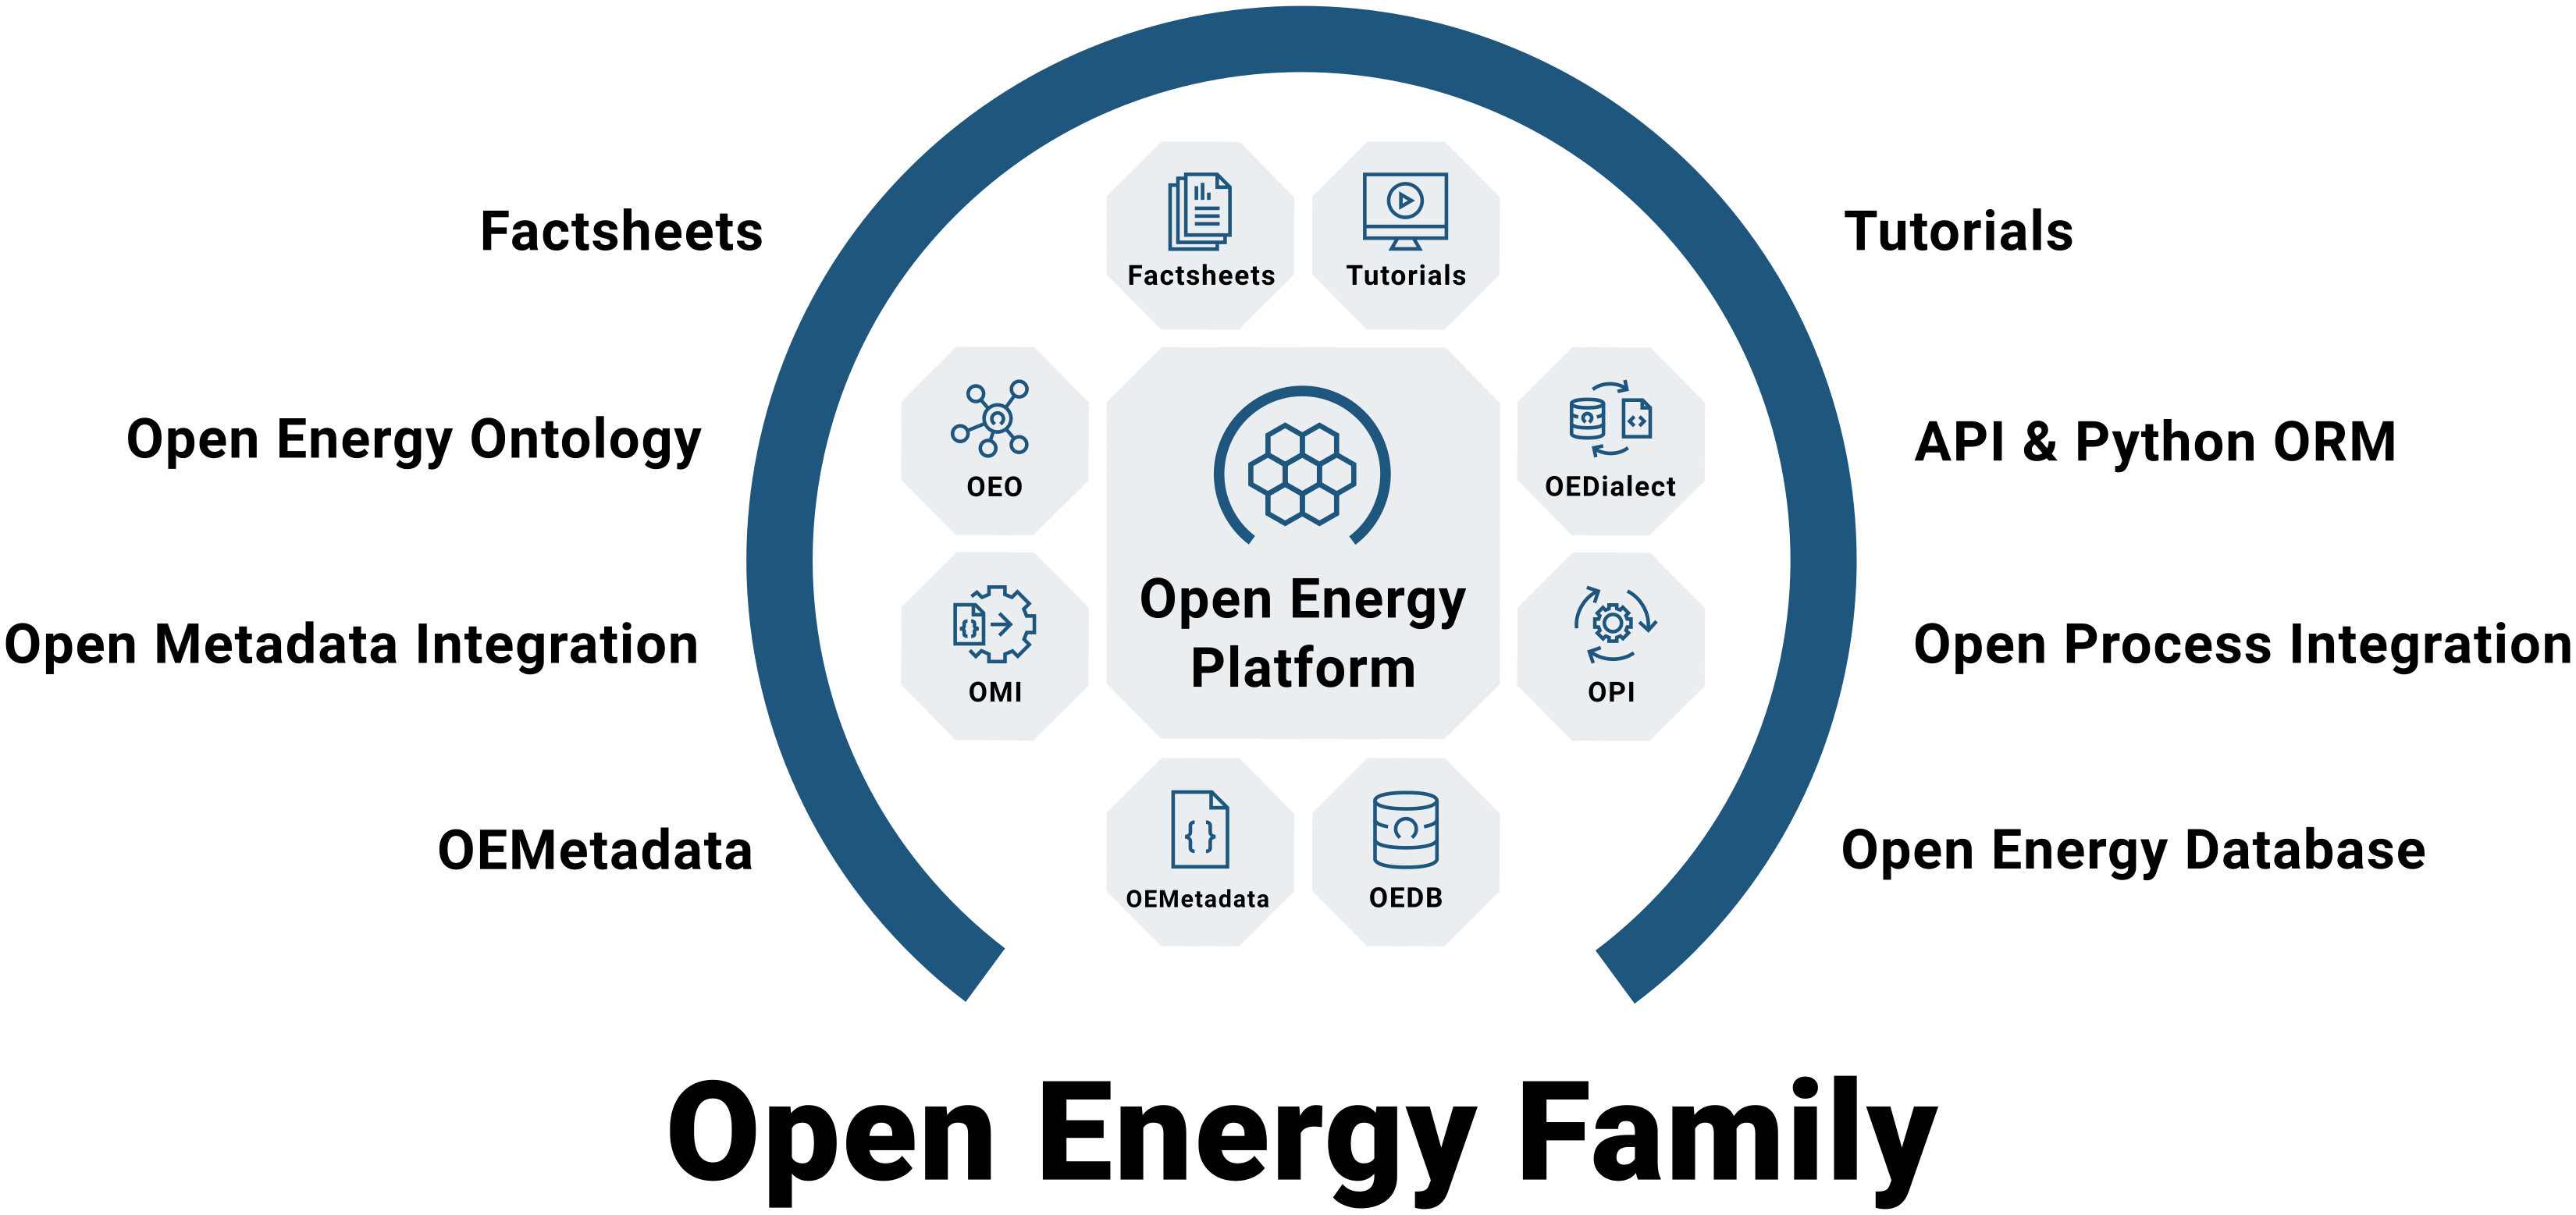 Open Energy Family